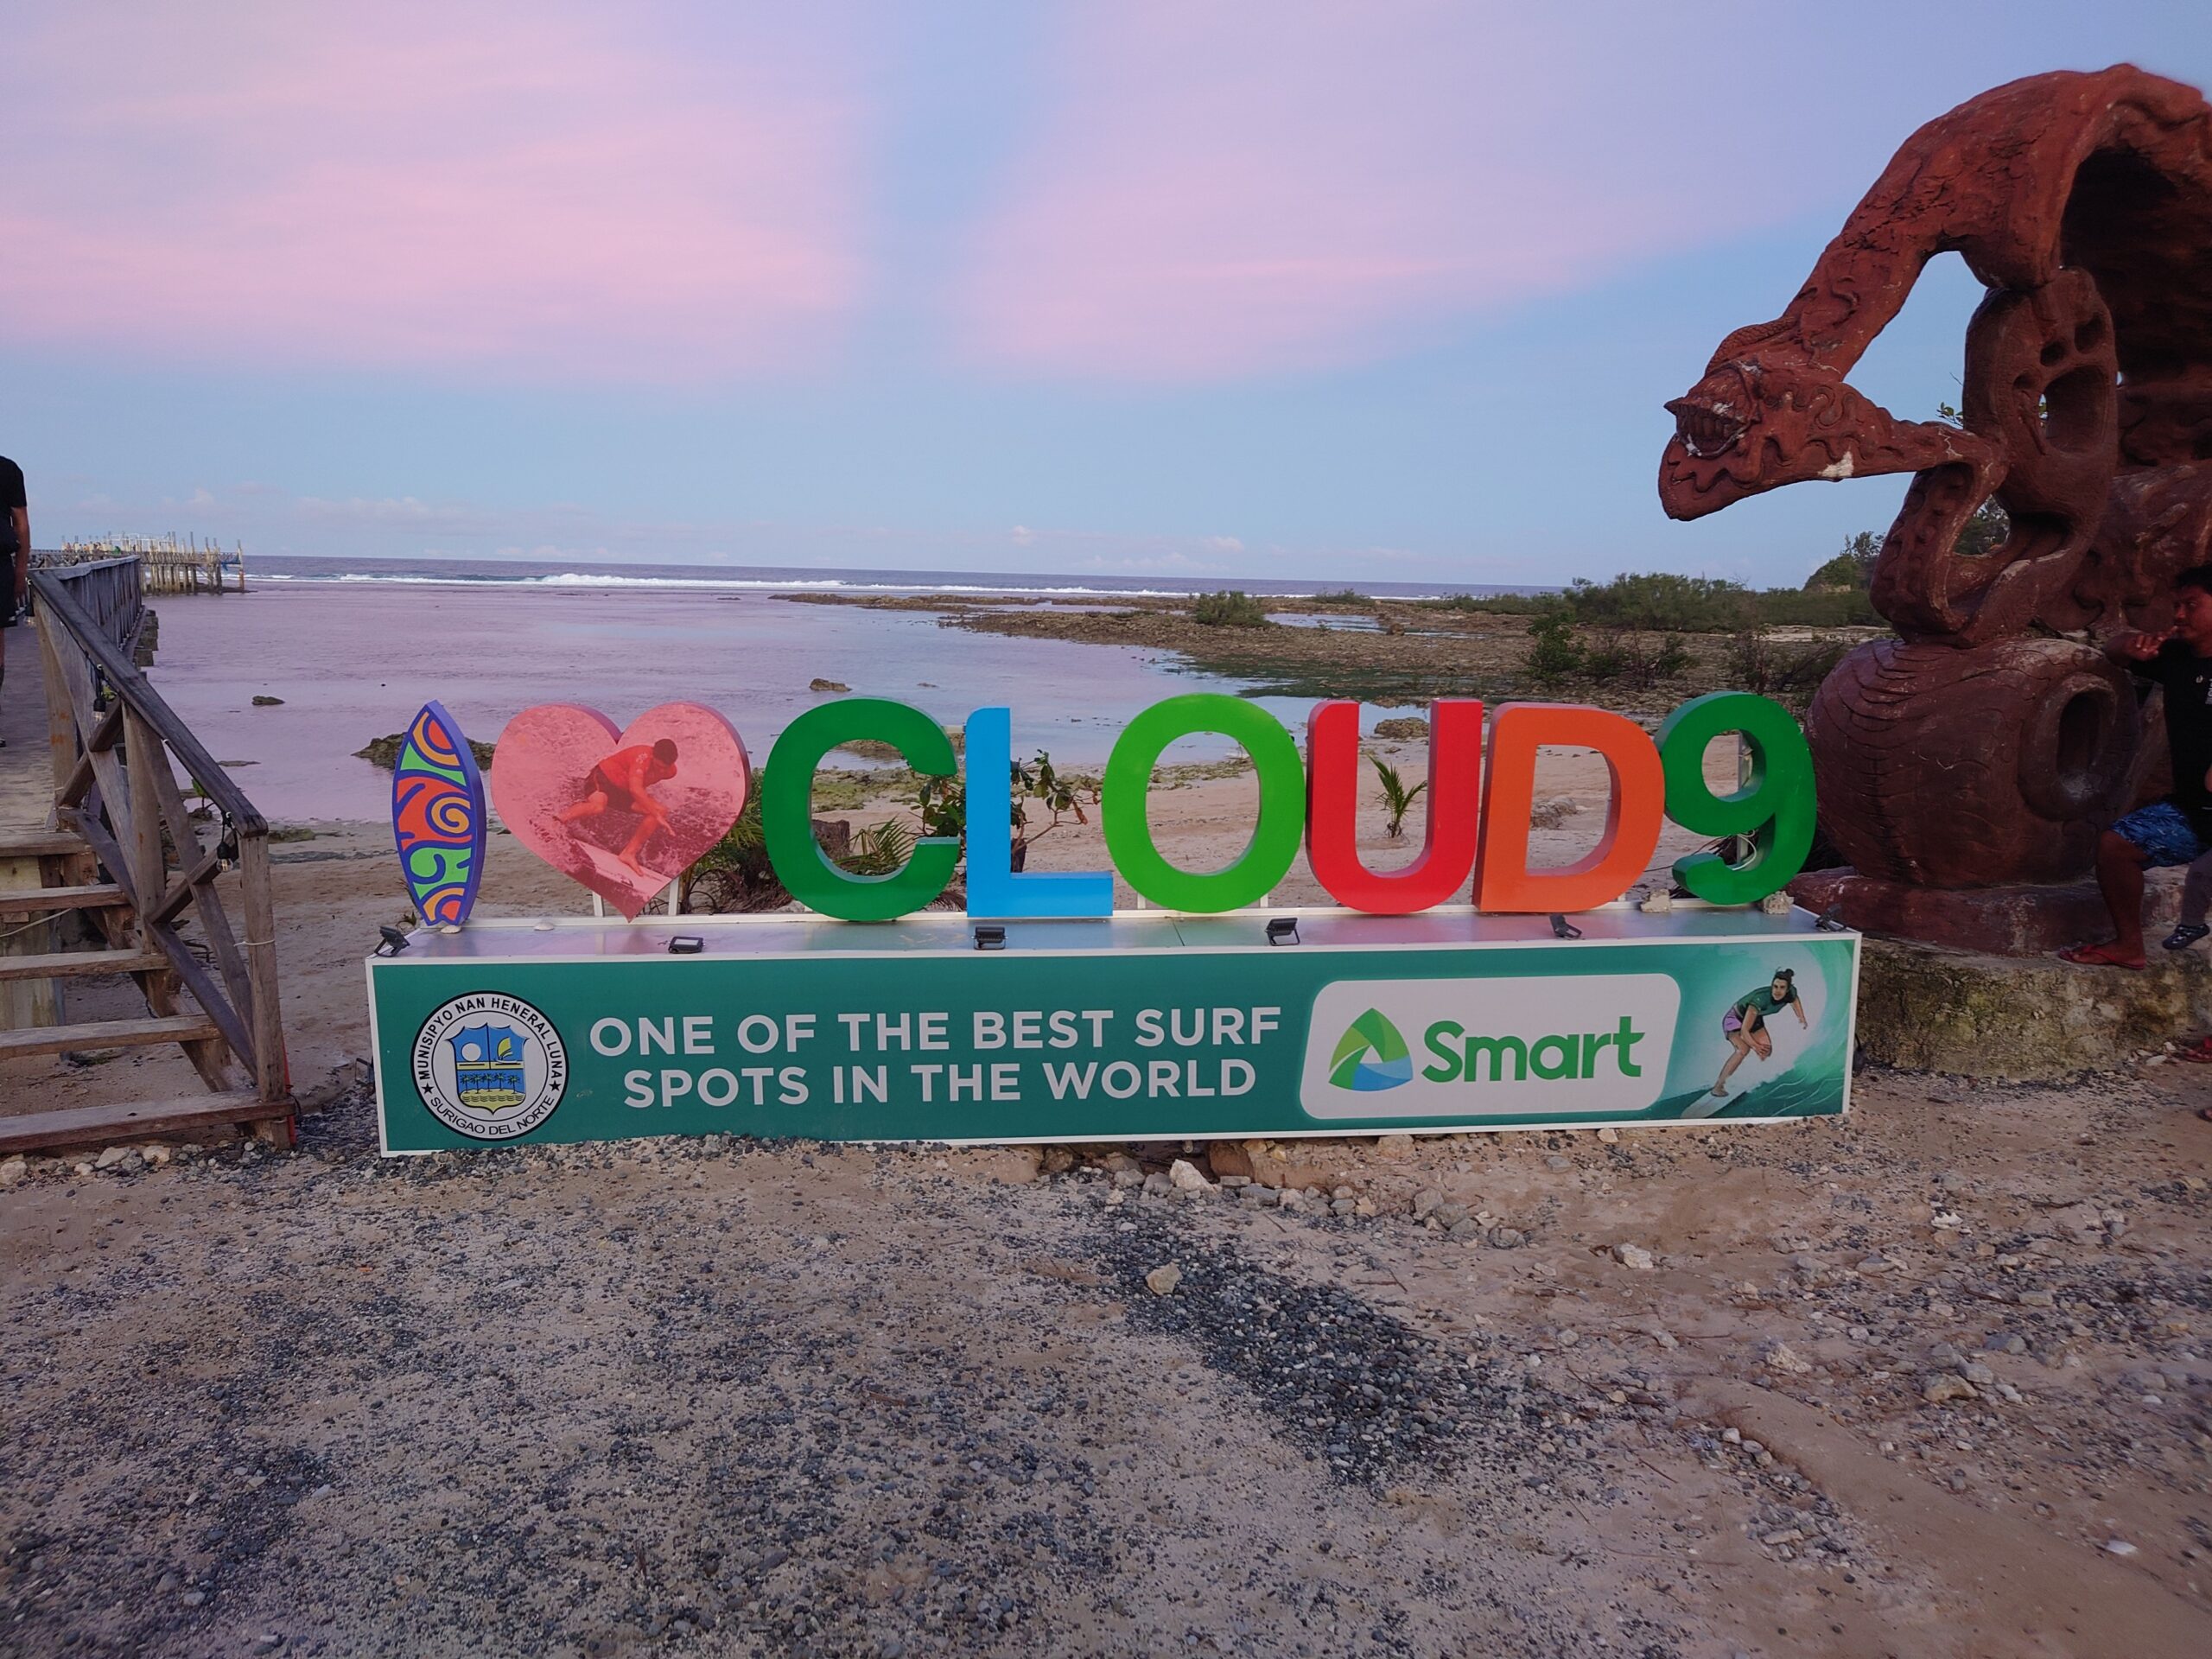 Cloud 9 sign at the boardwalk in General Luna, Siargao